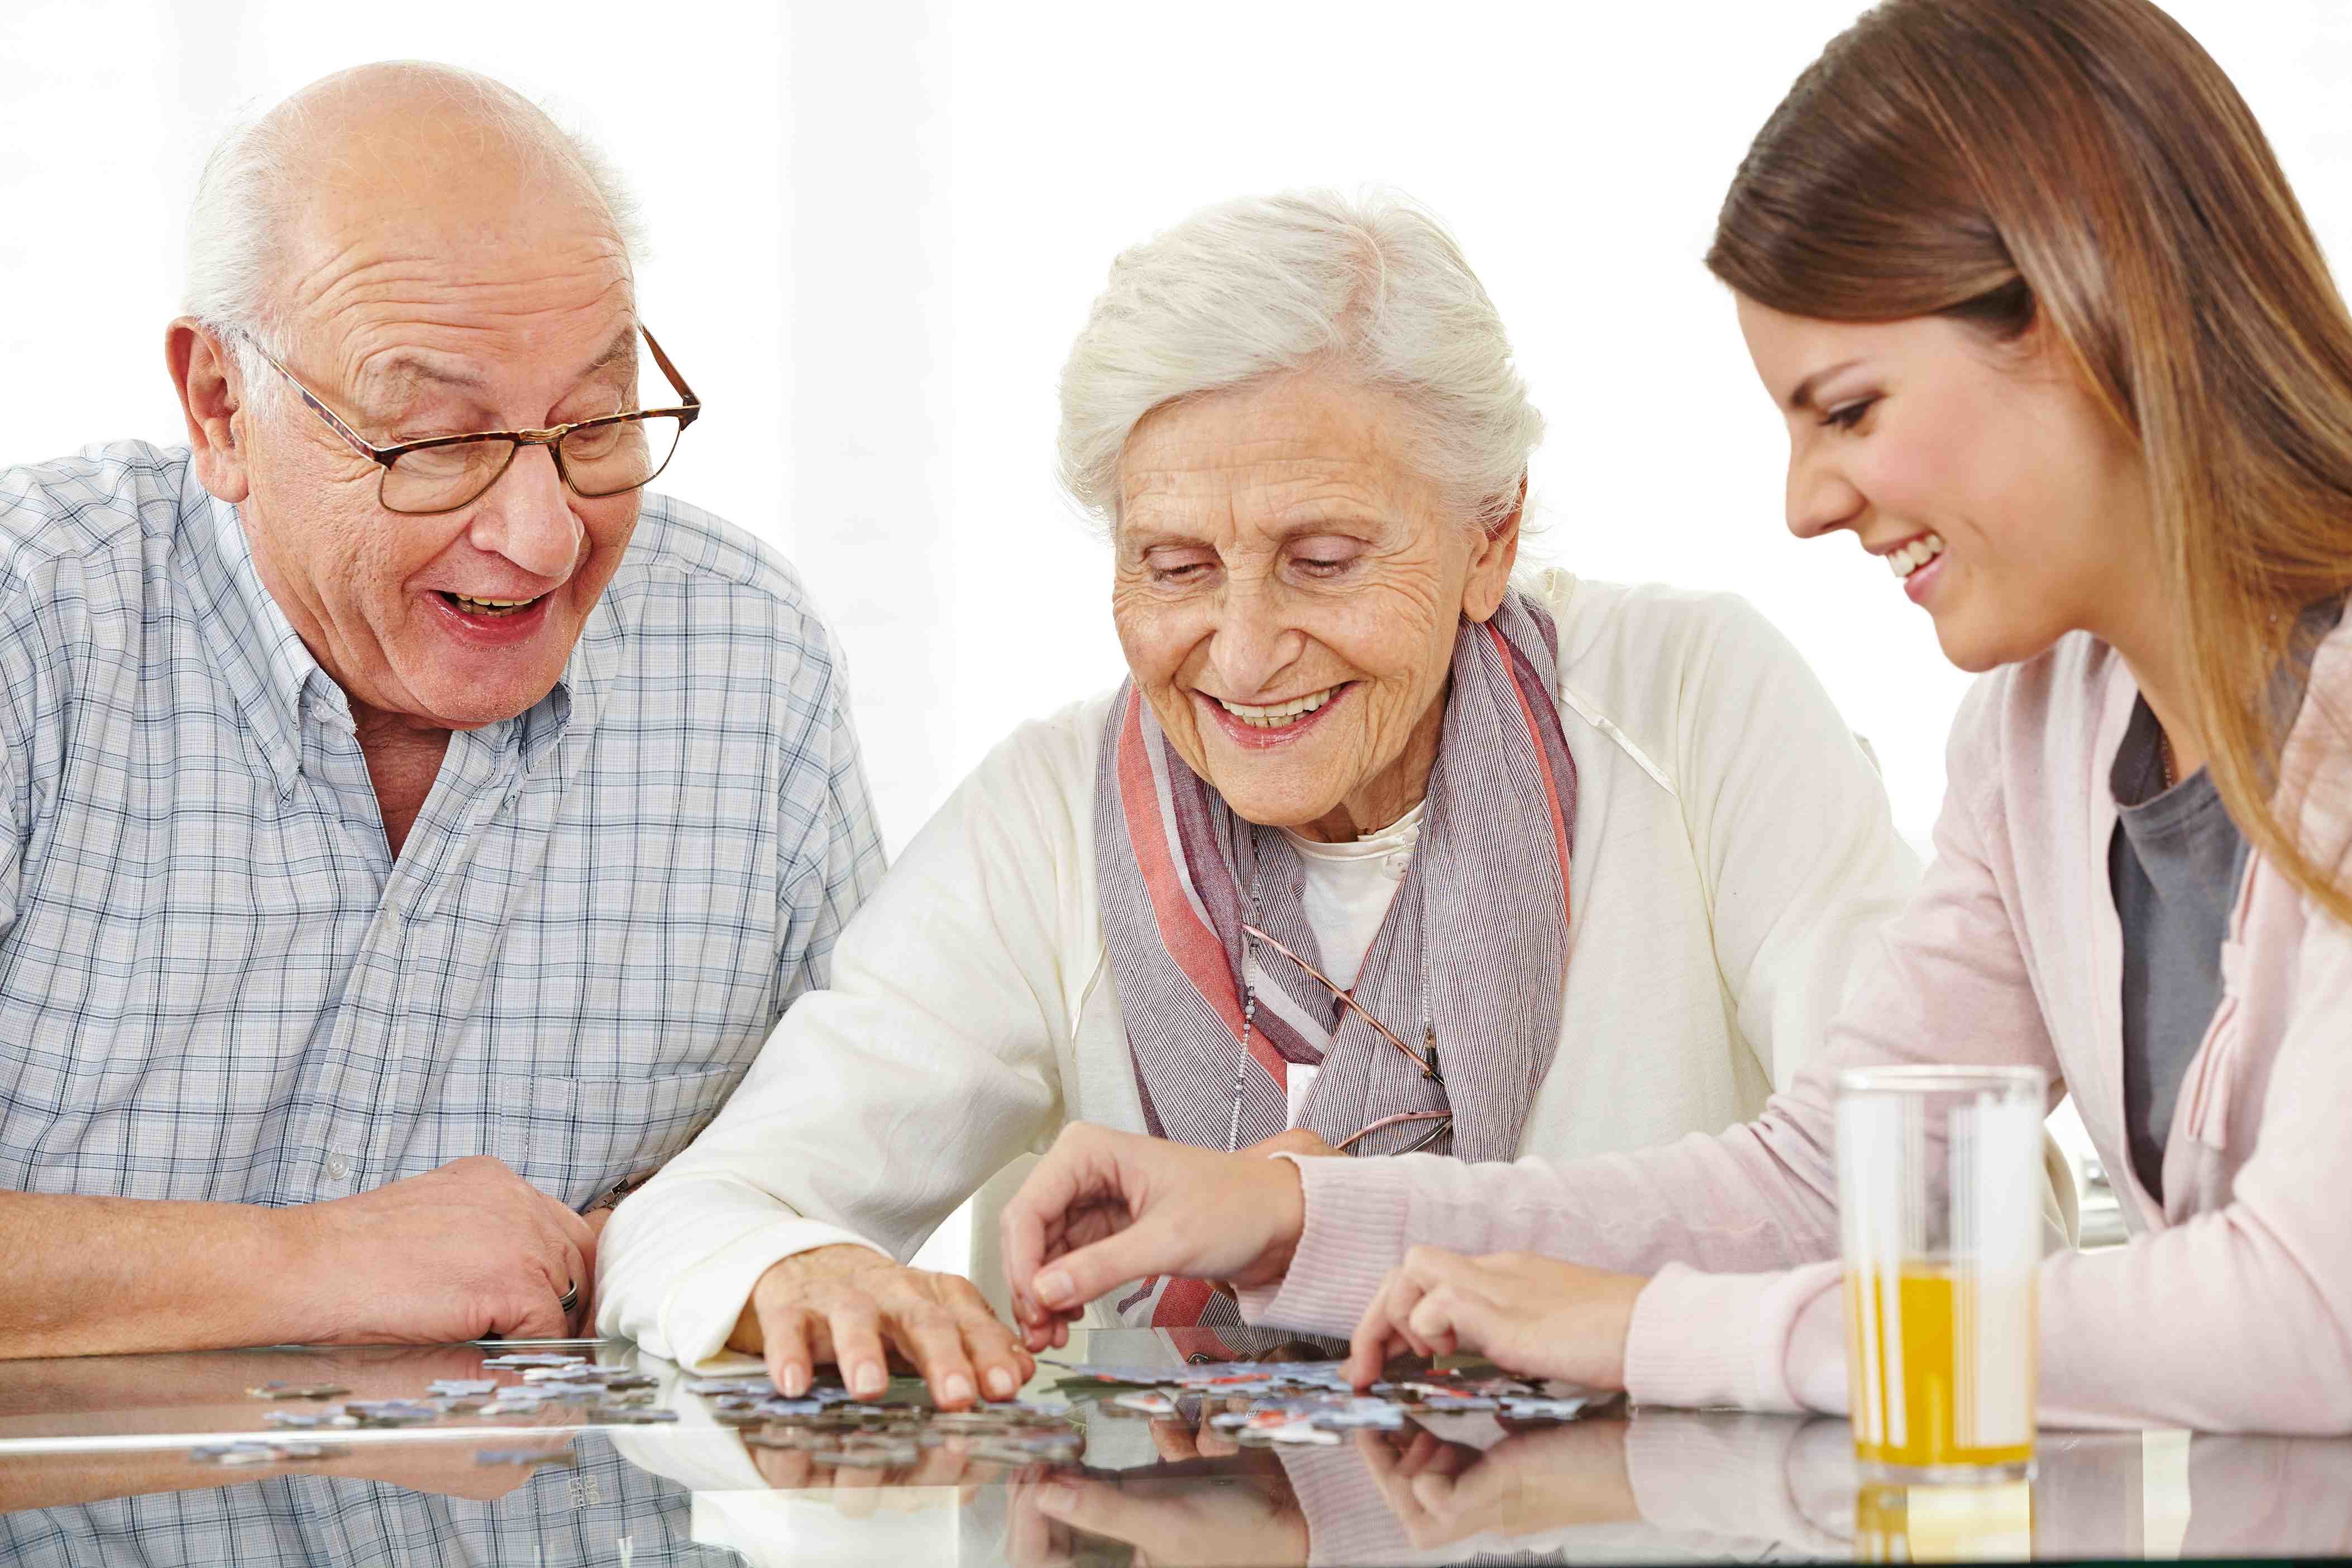 Качество и пожилой возраст. Разговор с пожилым человеком. Разговорполжилых людей. Общение с пожилыми людьми. Пожилые люди.